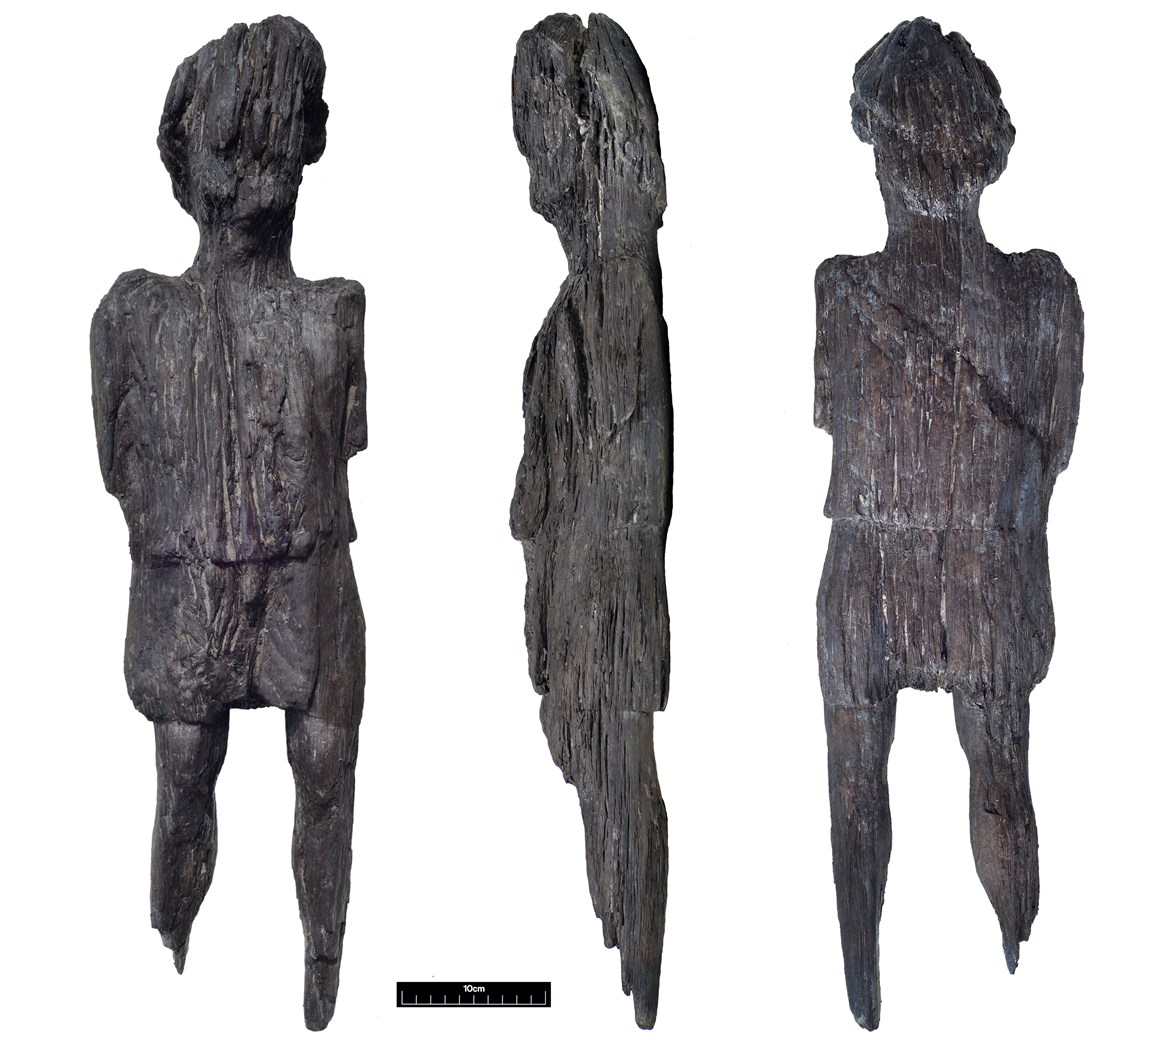 Das Bild zeigt die Holzfigur aus Buckinghamshire von der Front, der Seite und von hinten. Sehr deutlich ist die Tunika zu sehen, die gerafft ist.